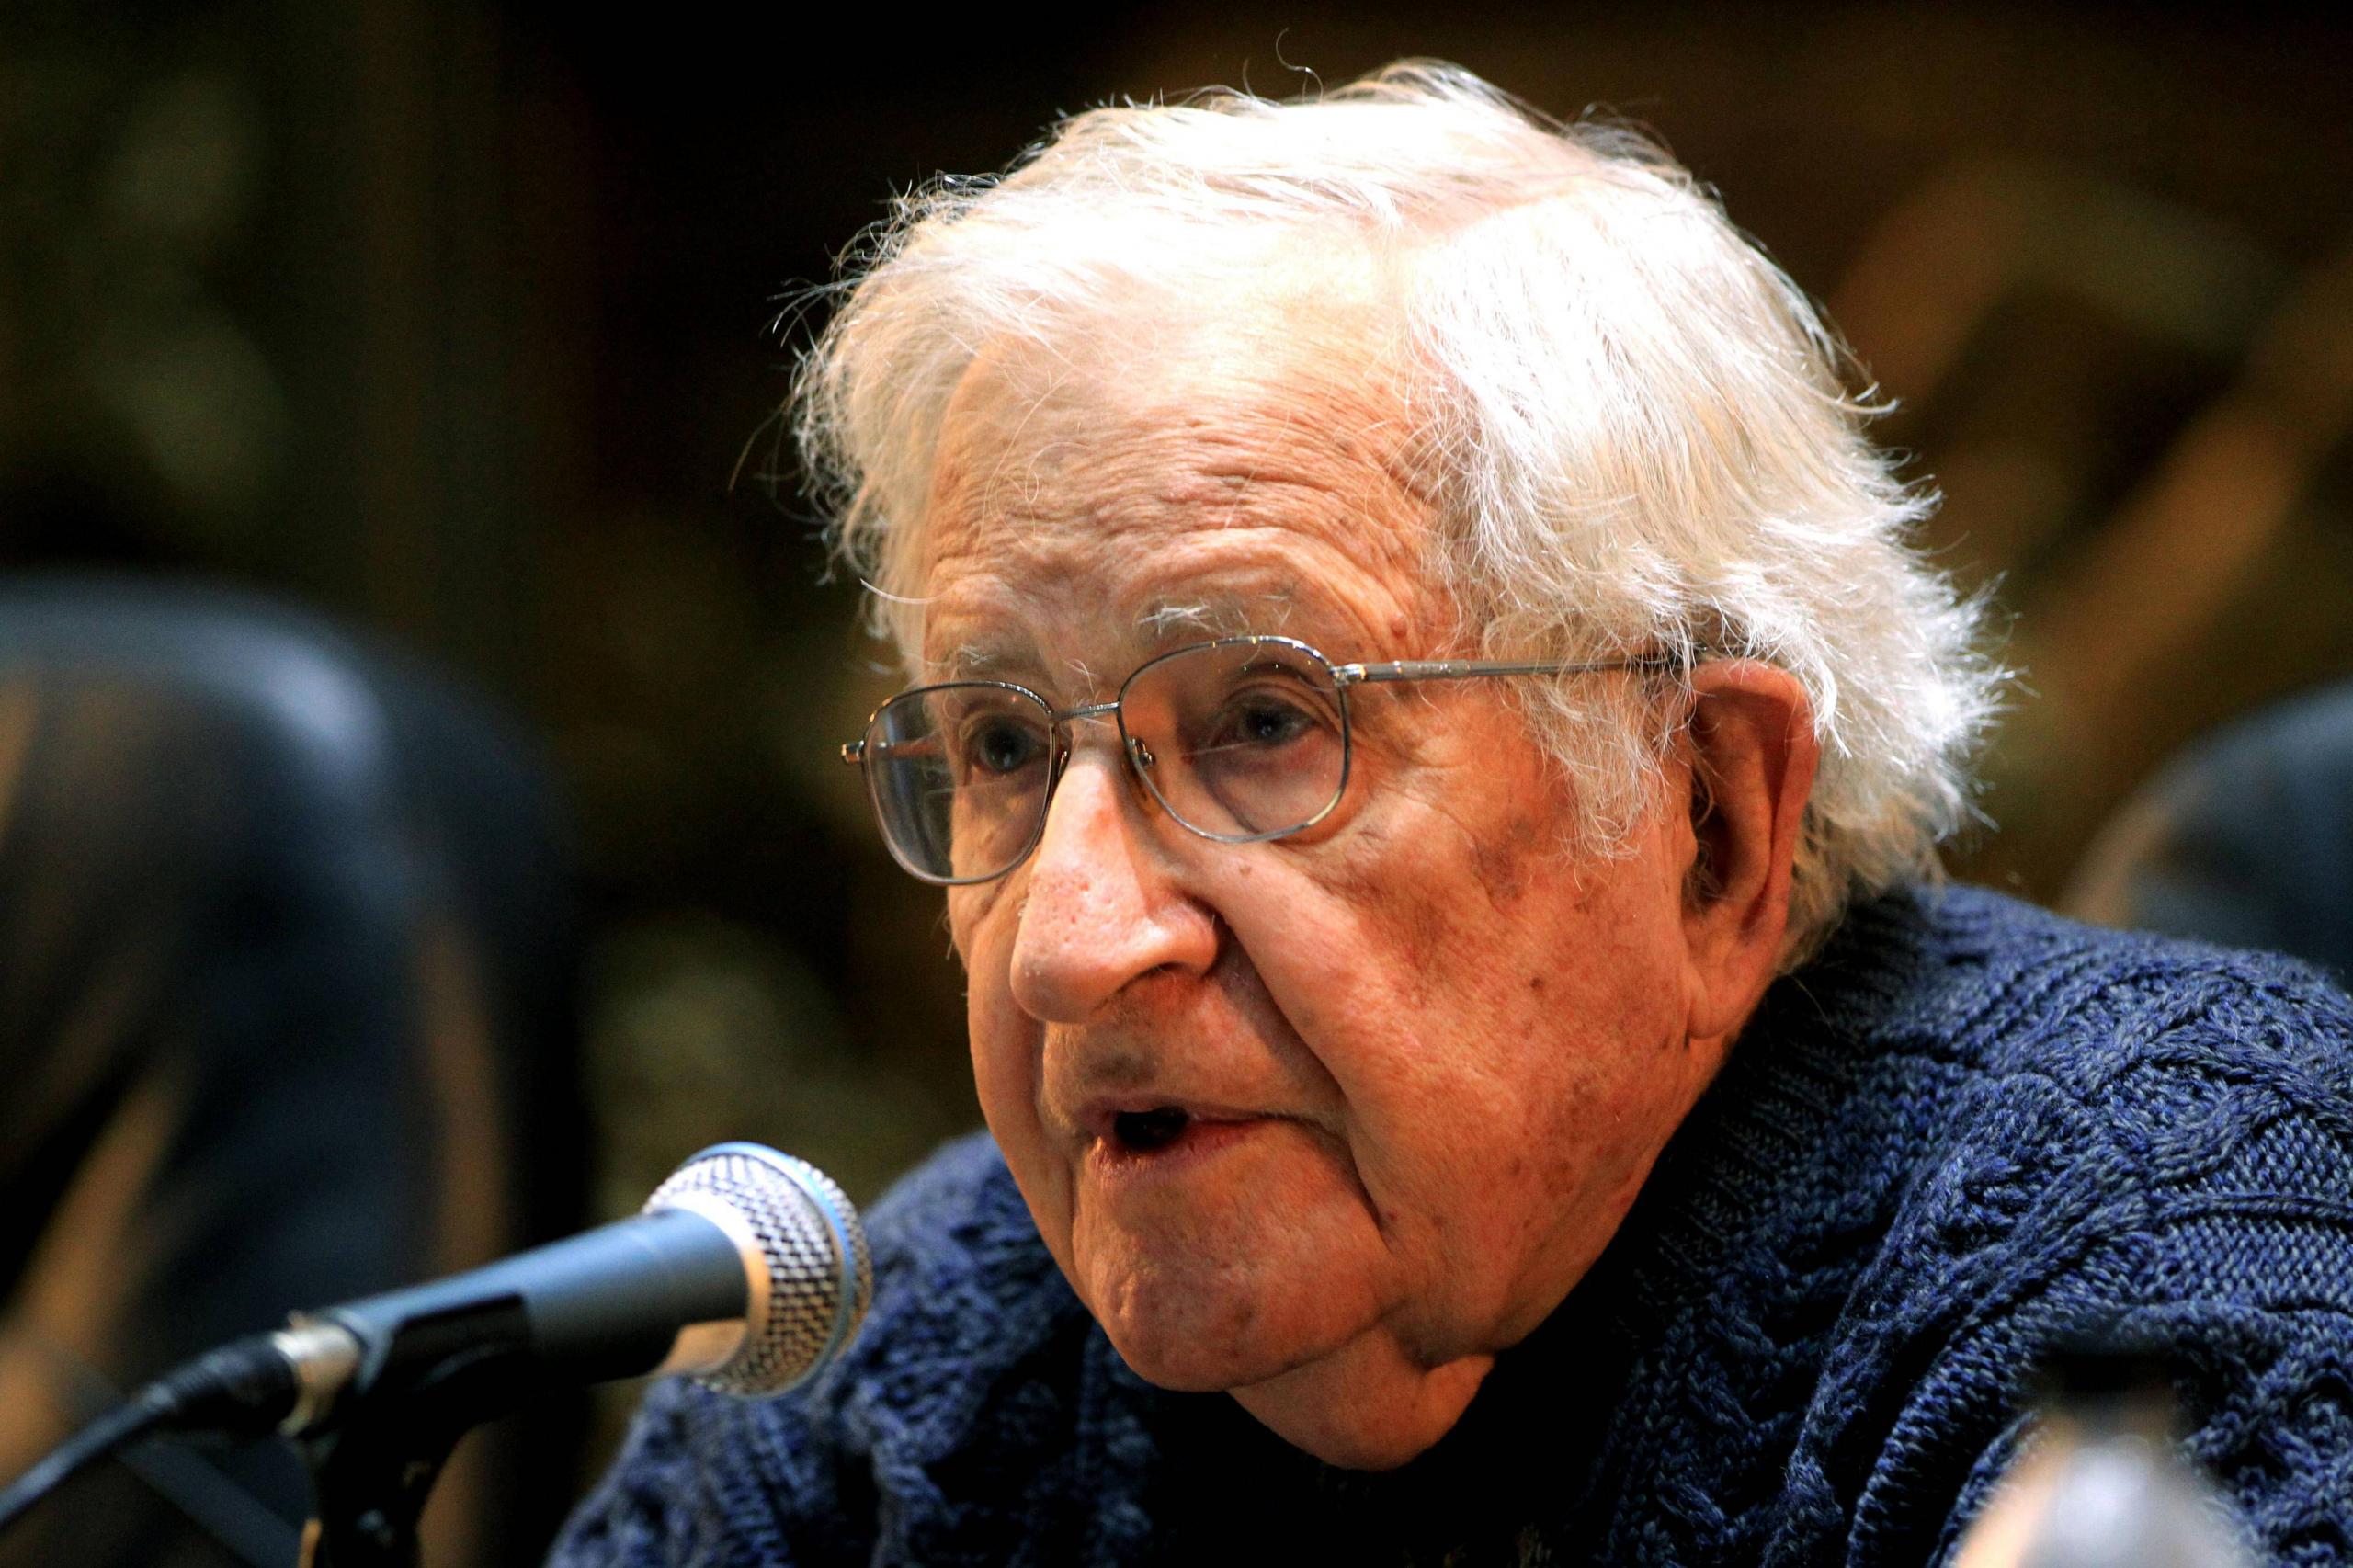 Noam Chomsky zählt zu den bedeutendsten öffentlichen Intellektuellen der Gegenwart. In der Zeitschrift »Current Affairs« sprach er kürzlich über die Verhinderung eines Dritten Weltkrieges.